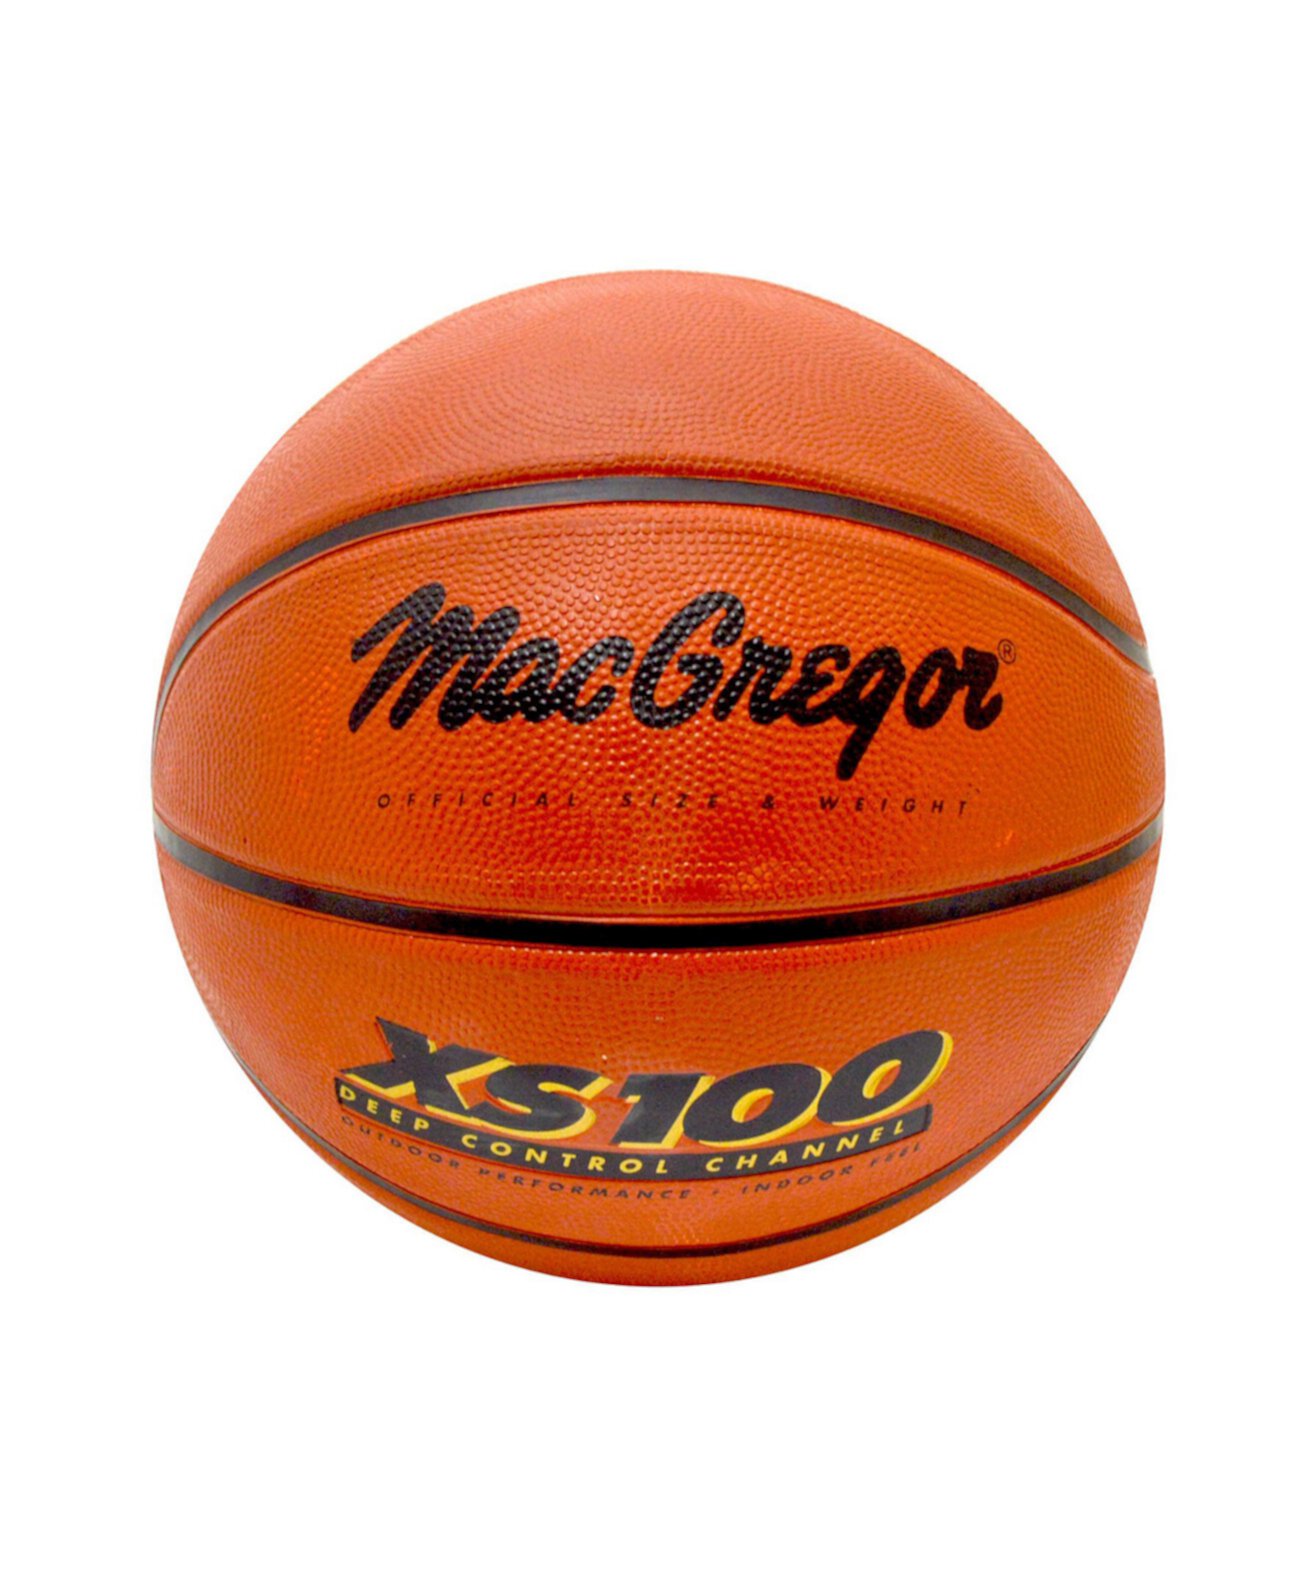 - Macgregor Xs-100 Размер 7 резиновый баскетбол Hedstrom